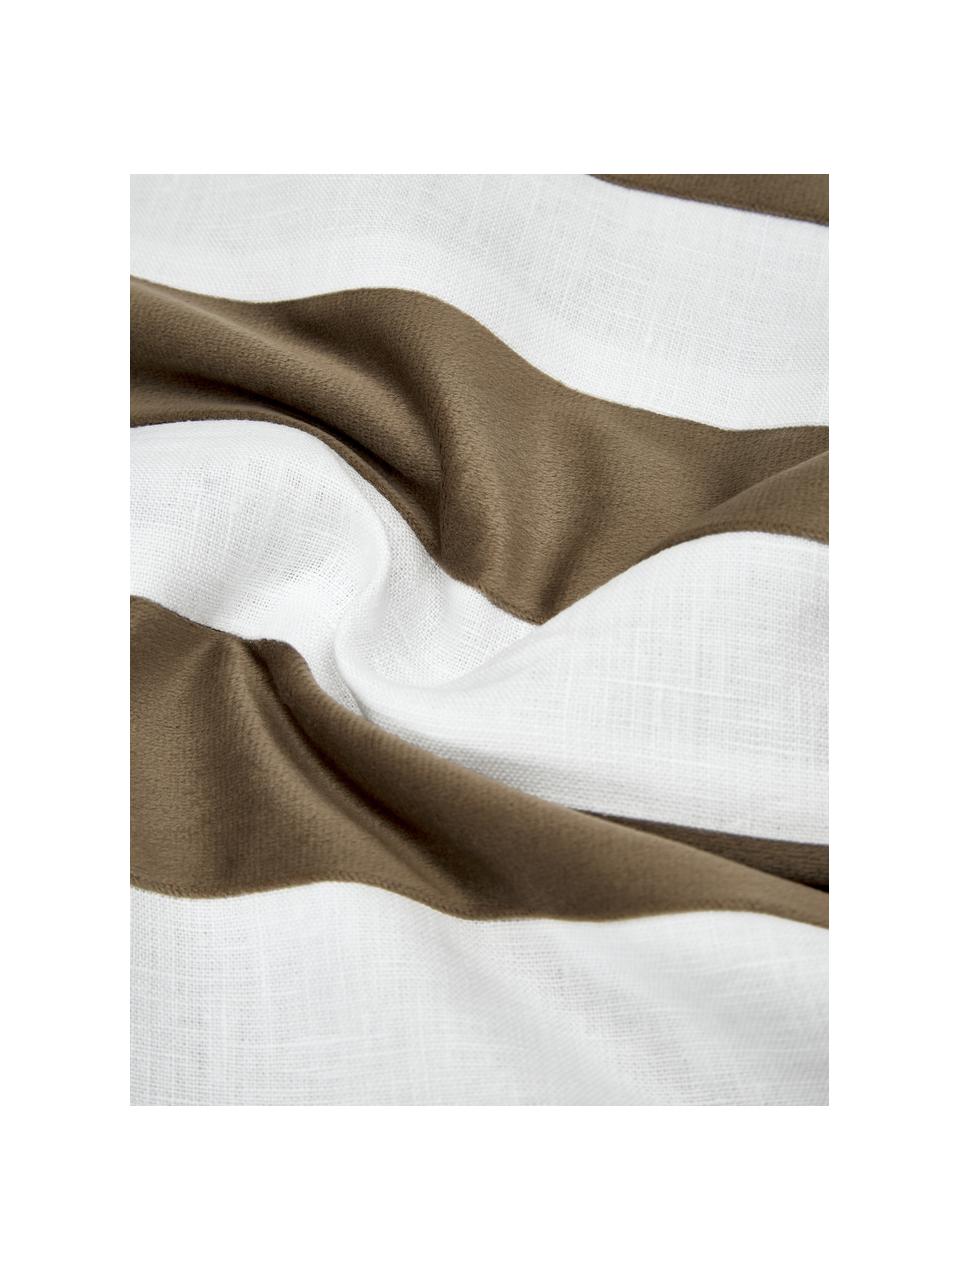 Federa arredo in misto velluto e lino color marrone/bianco Maui, Marrone, bianco, Larg. 30 x Lung. 50 cm